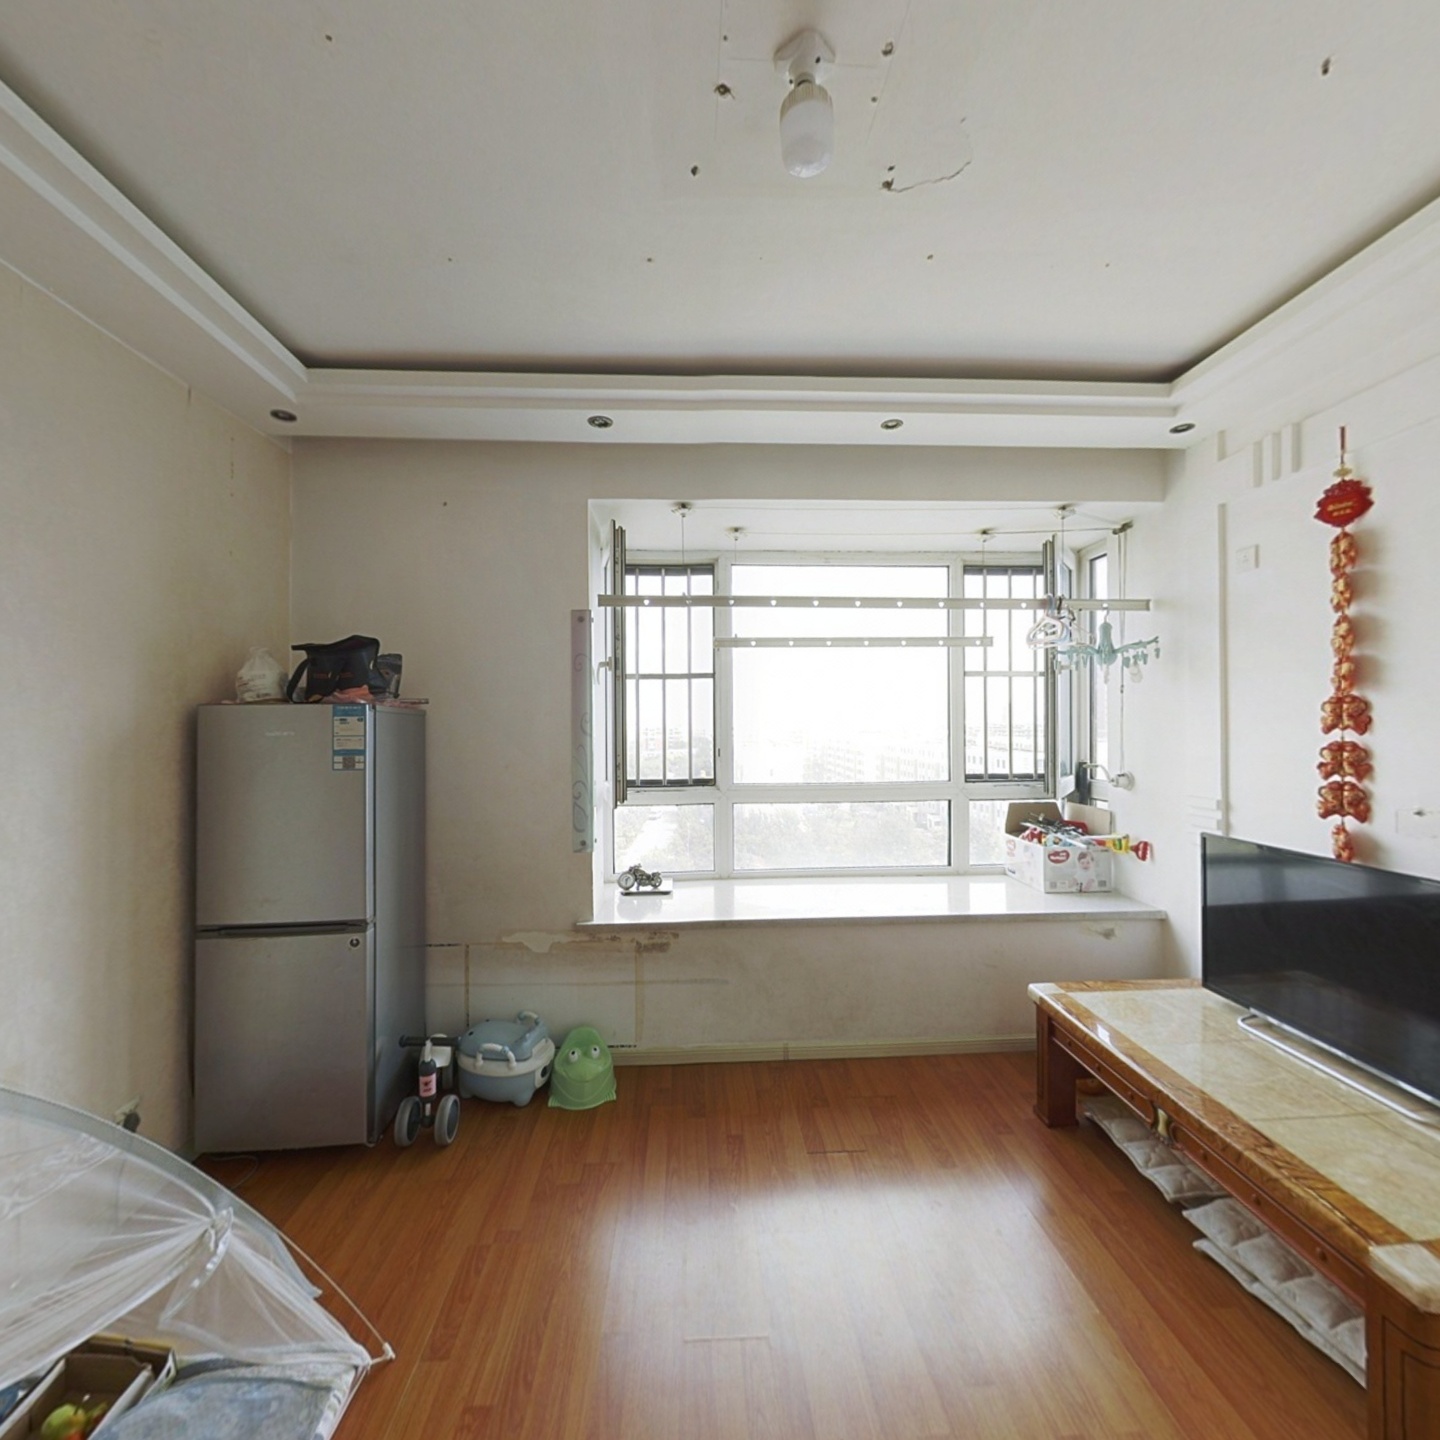 俪锦城一期 81平米精装南北两居室 拎包即住 价格可议